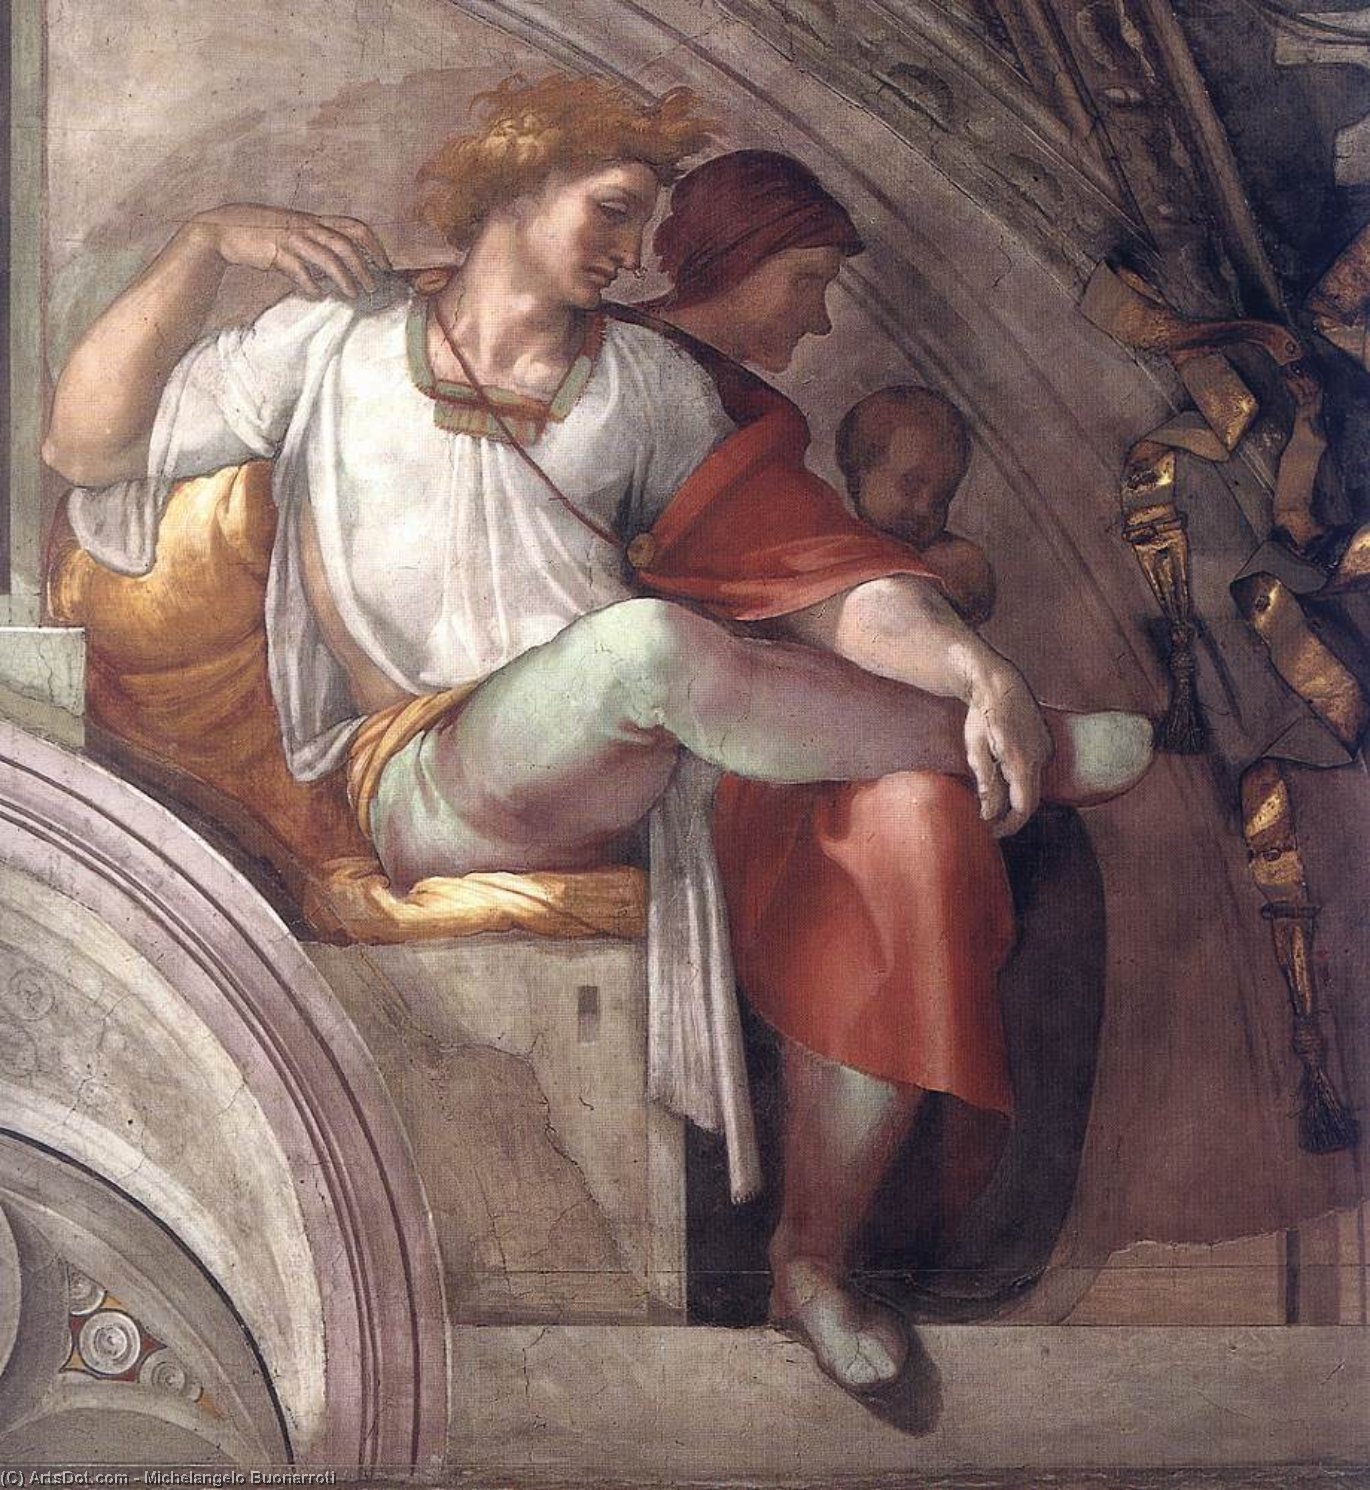 Wikioo.org - Bách khoa toàn thư về mỹ thuật - Vẽ tranh, Tác phẩm nghệ thuật Michelangelo Buonarroti - Eleazar - Matthan (detail)